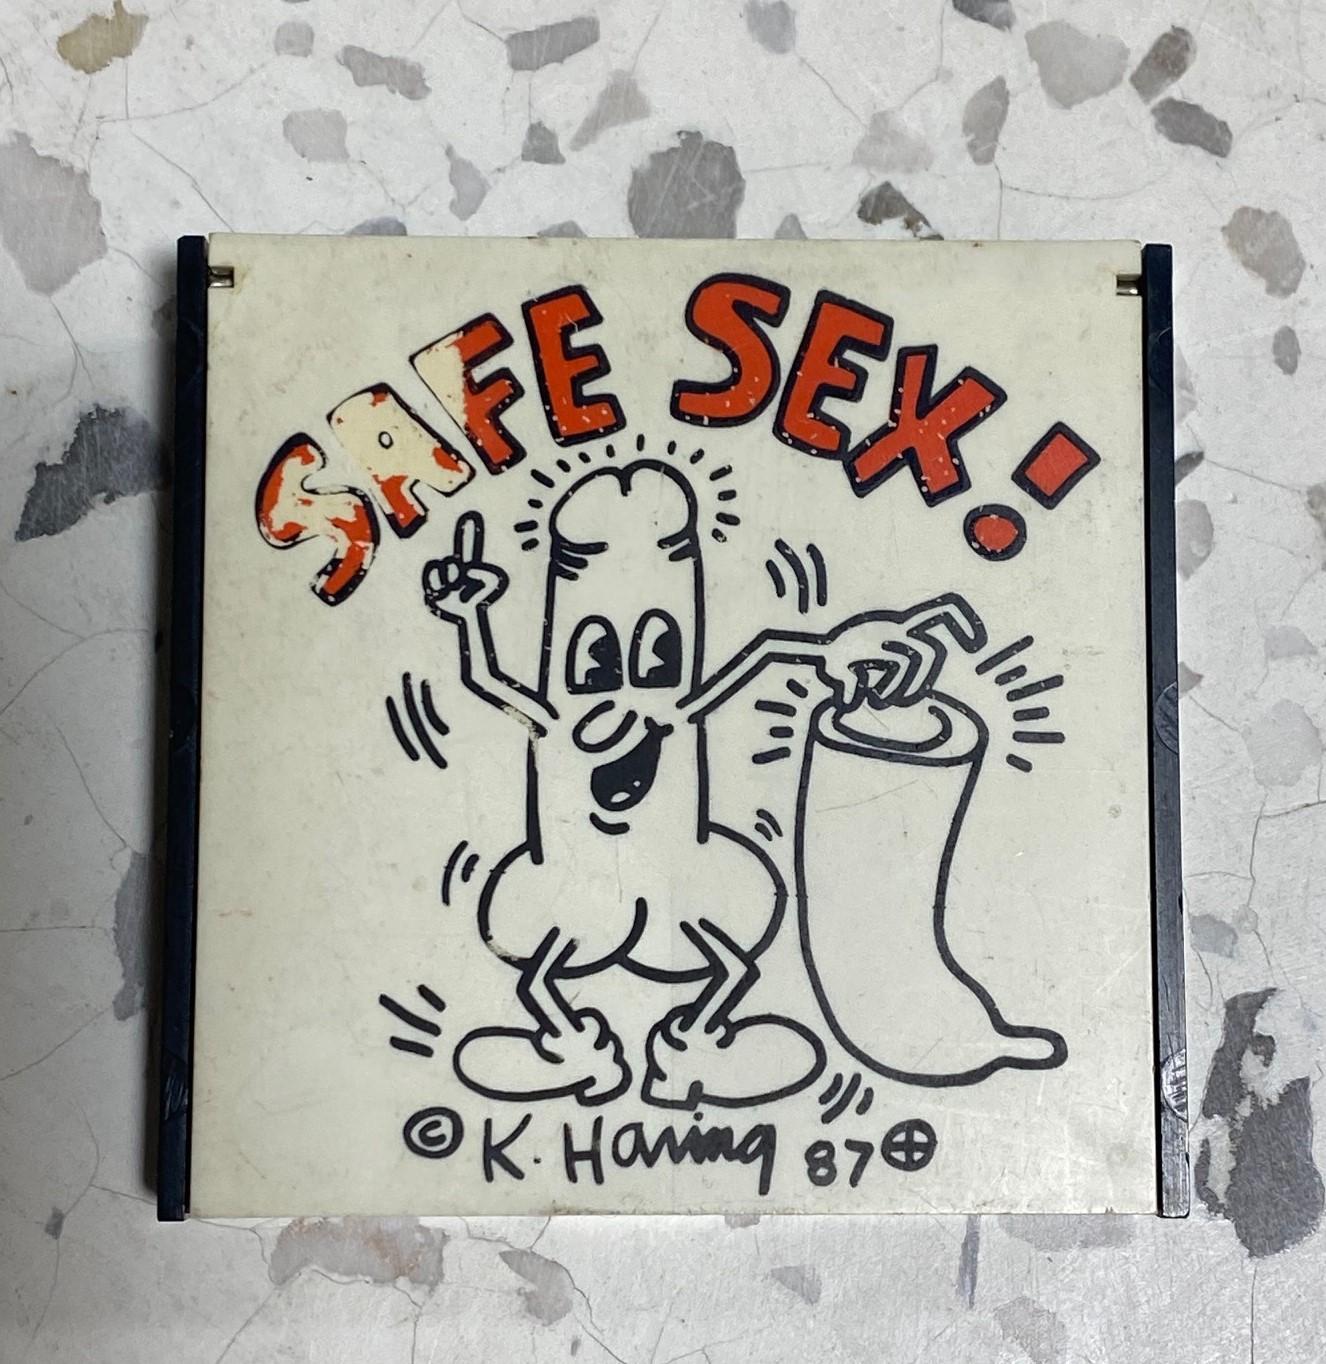 Raro estuche/porta preservativos con clip original de Keith Haring/ New York City Pop Shop 